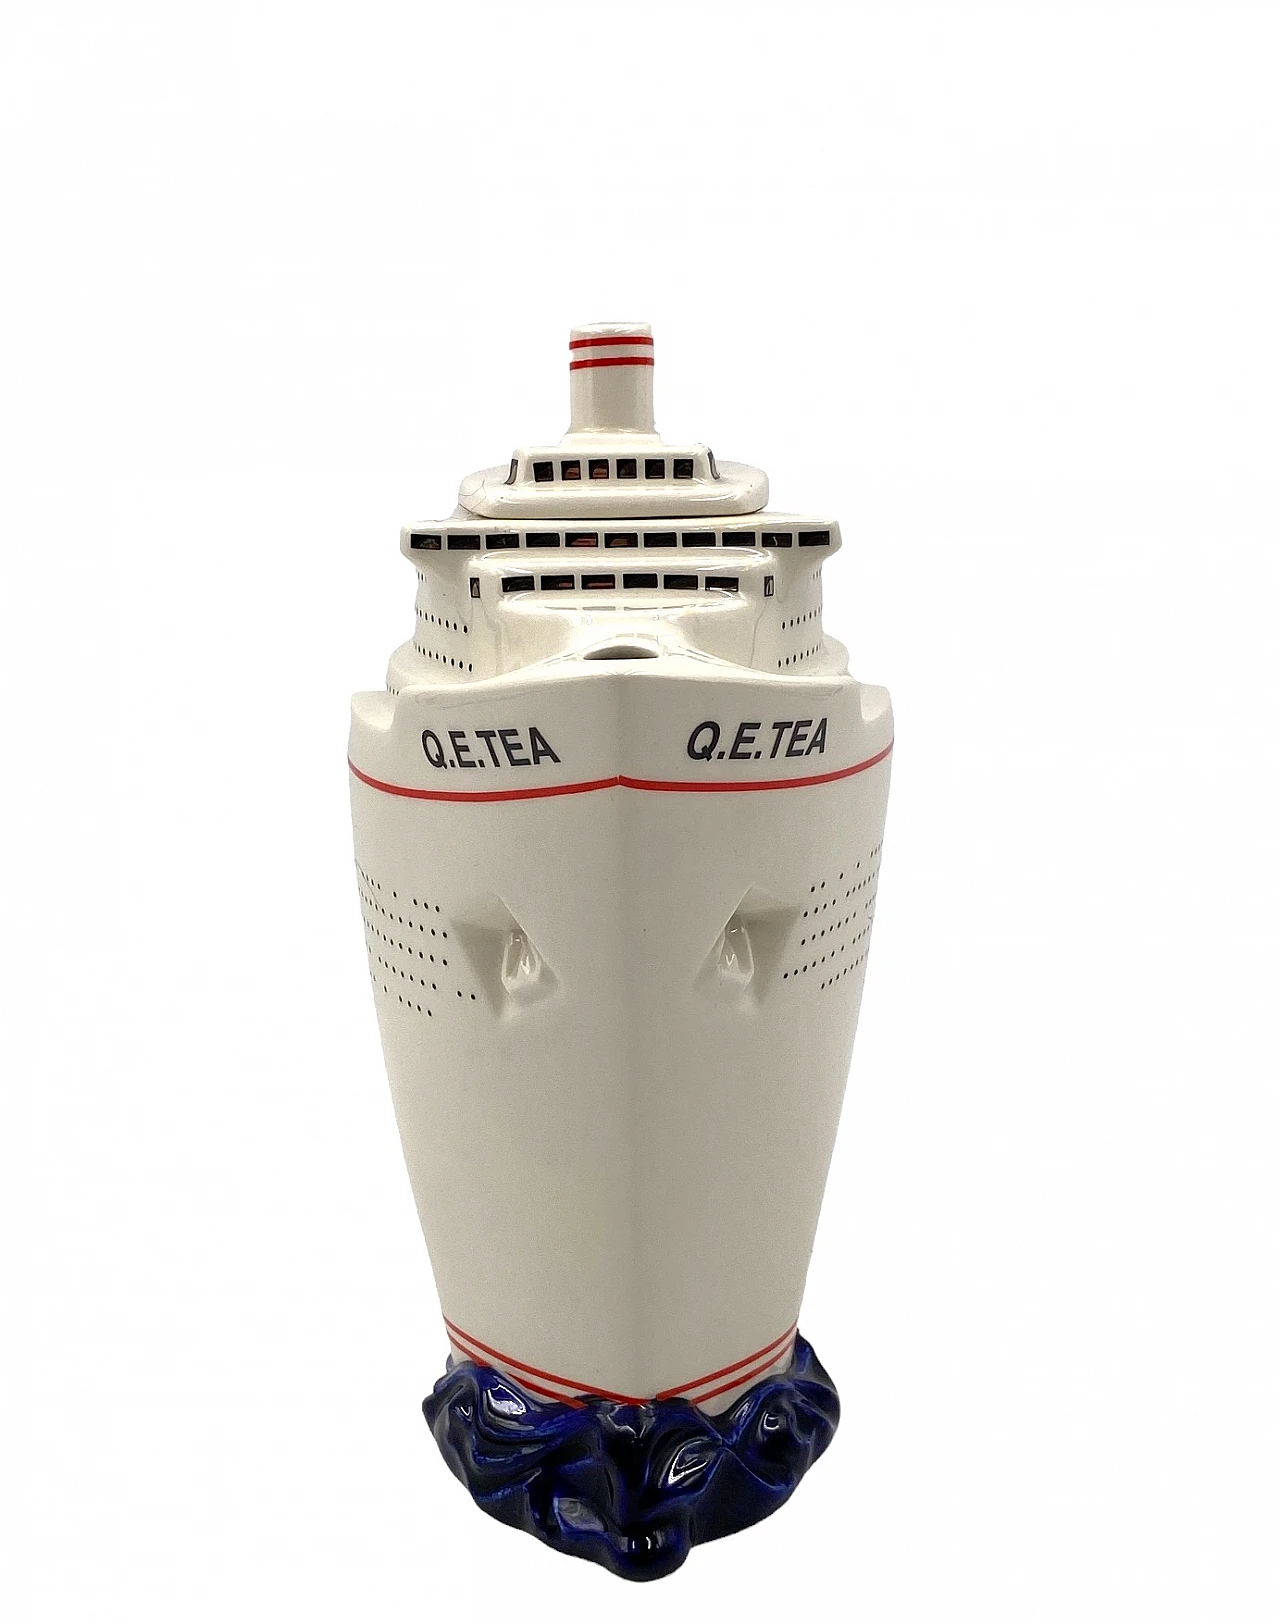 Queen Elizabeth II cruise ship teapot by Paul Cardew 14